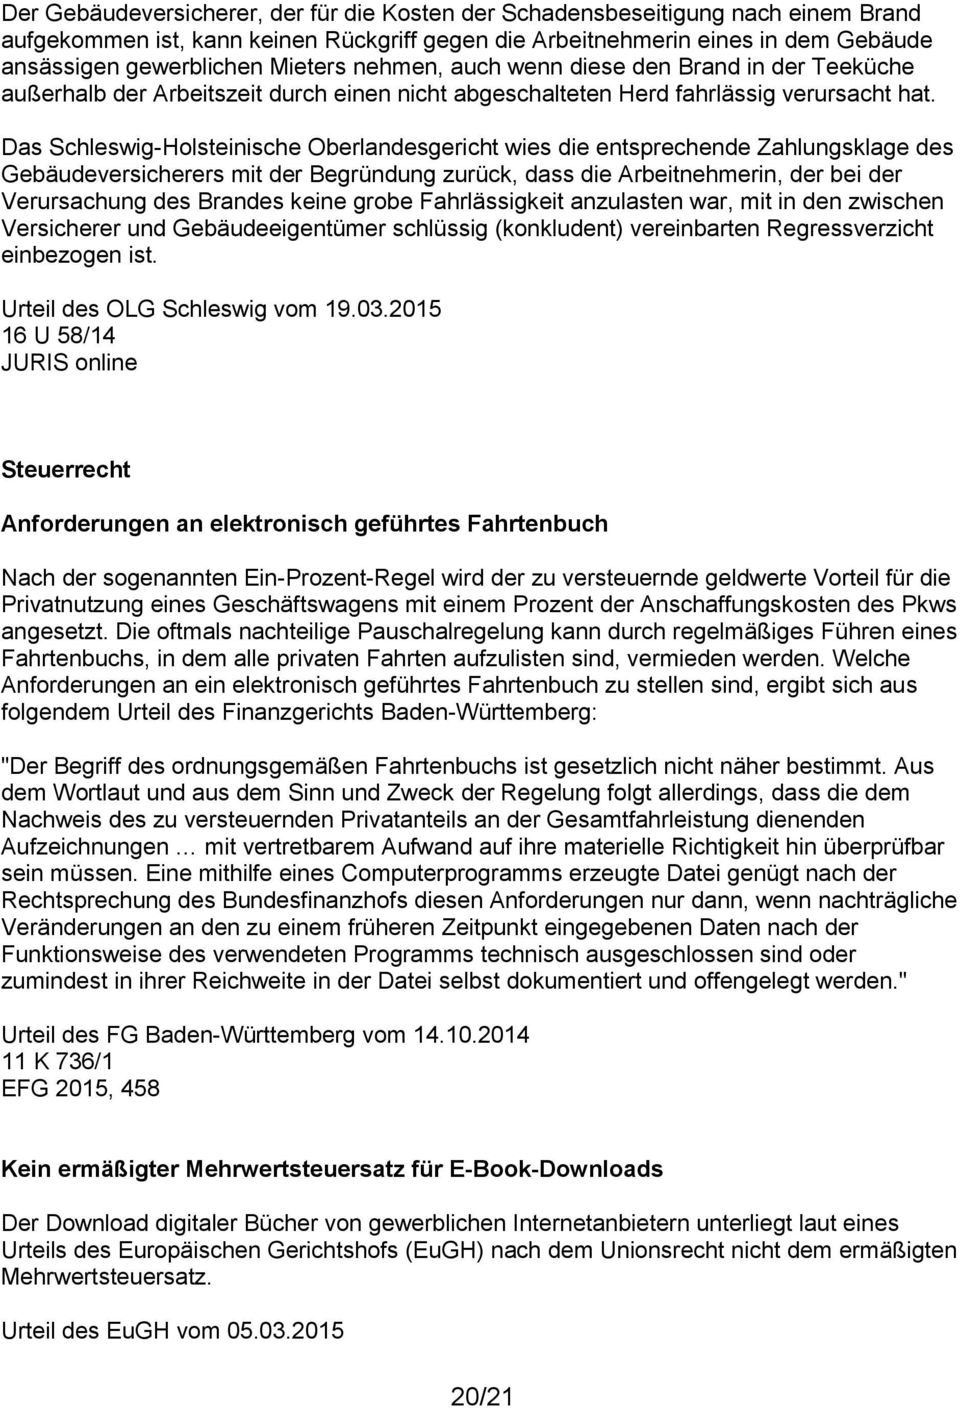 Das Schleswig-Holsteinische Oberlandesgericht wies die entsprechende Zahlungsklage des Gebäudeversicherers mit der Begründung zurück, dass die Arbeitnehmerin, der bei der Verursachung des Brandes